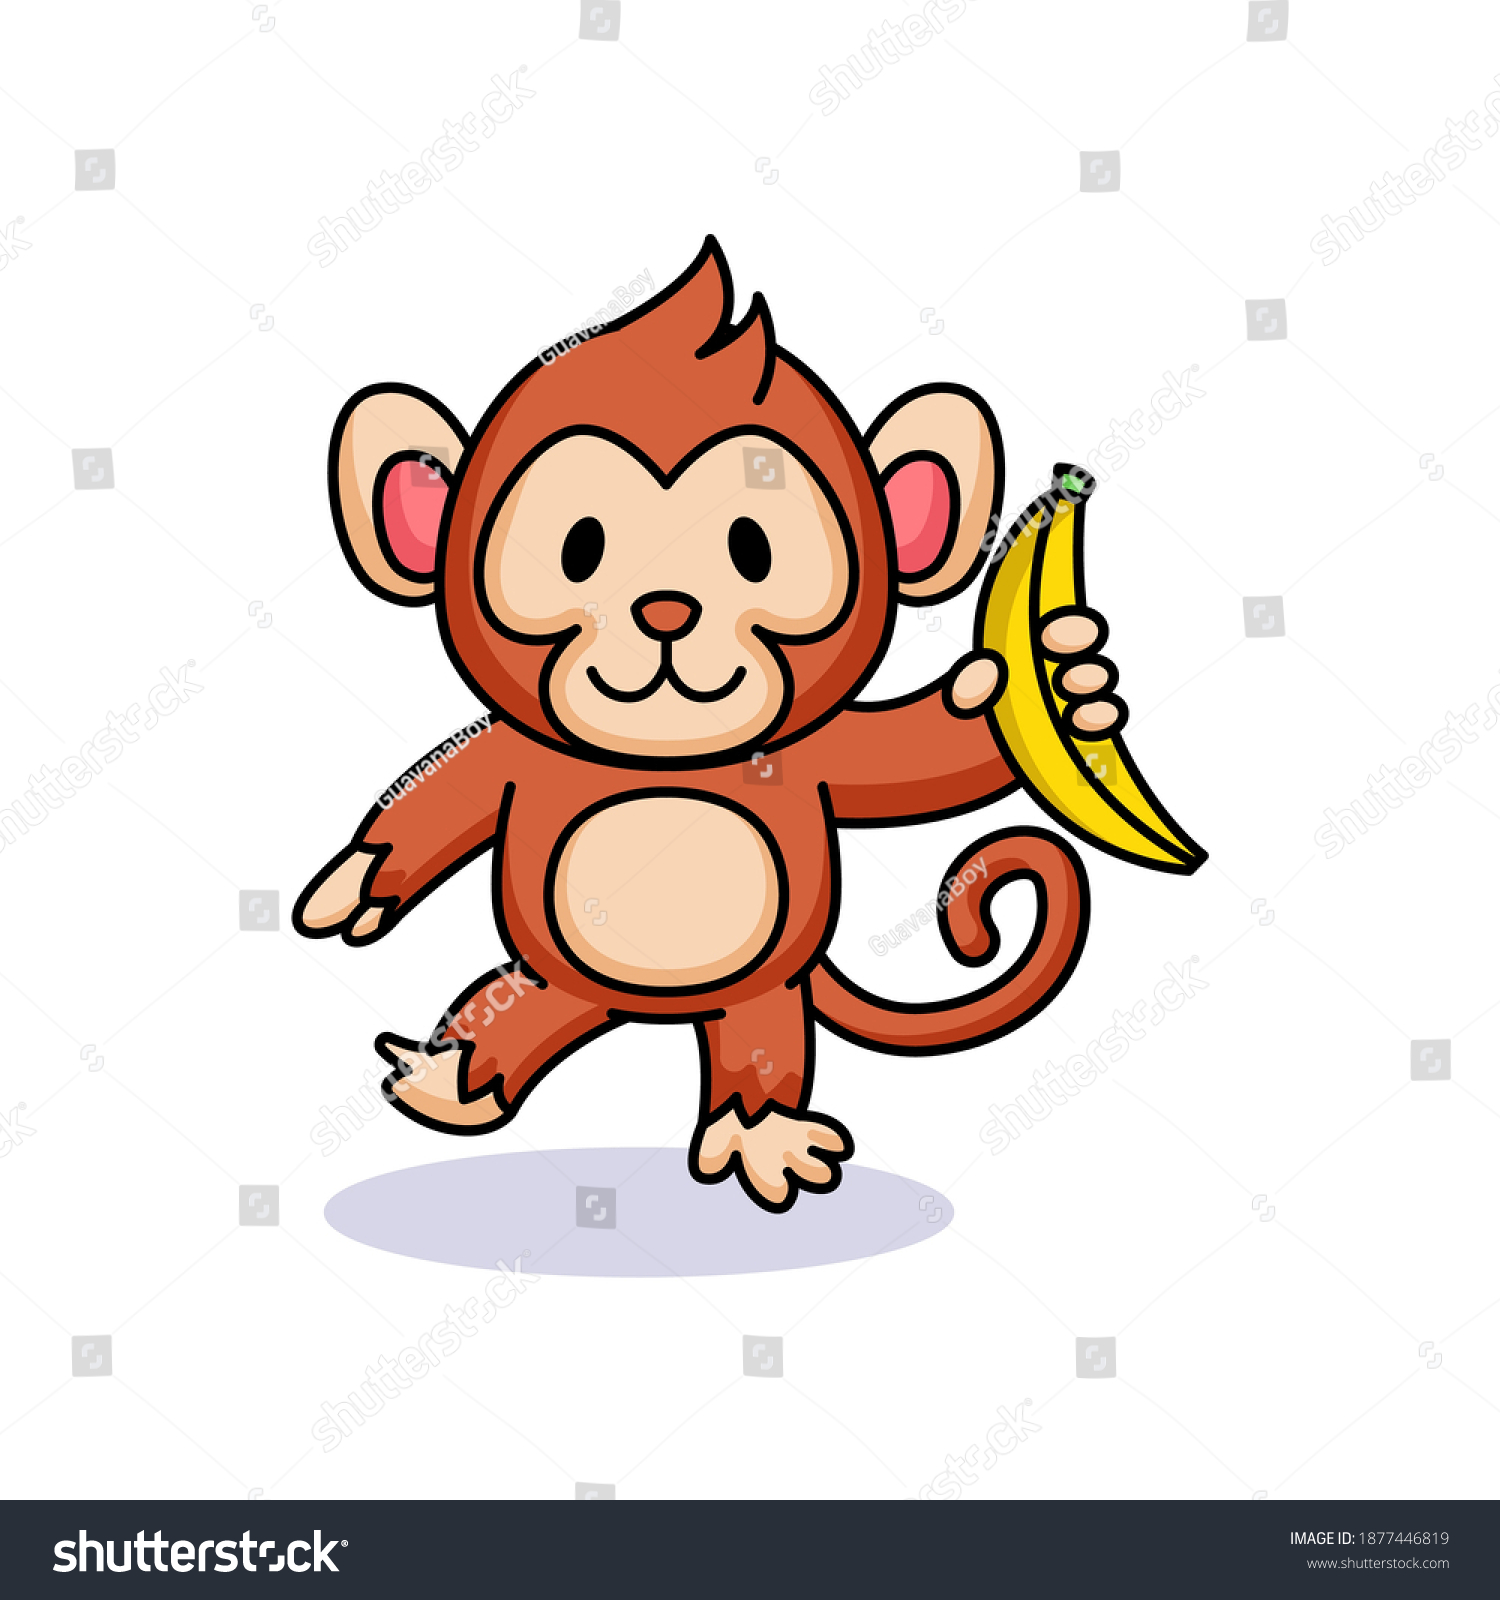 Cute Chibi Kawaii Baby Monkey Banana: Vector Có Sẵn (Miễn Phí Bản Quyền)  1877446819 | Shutterstock